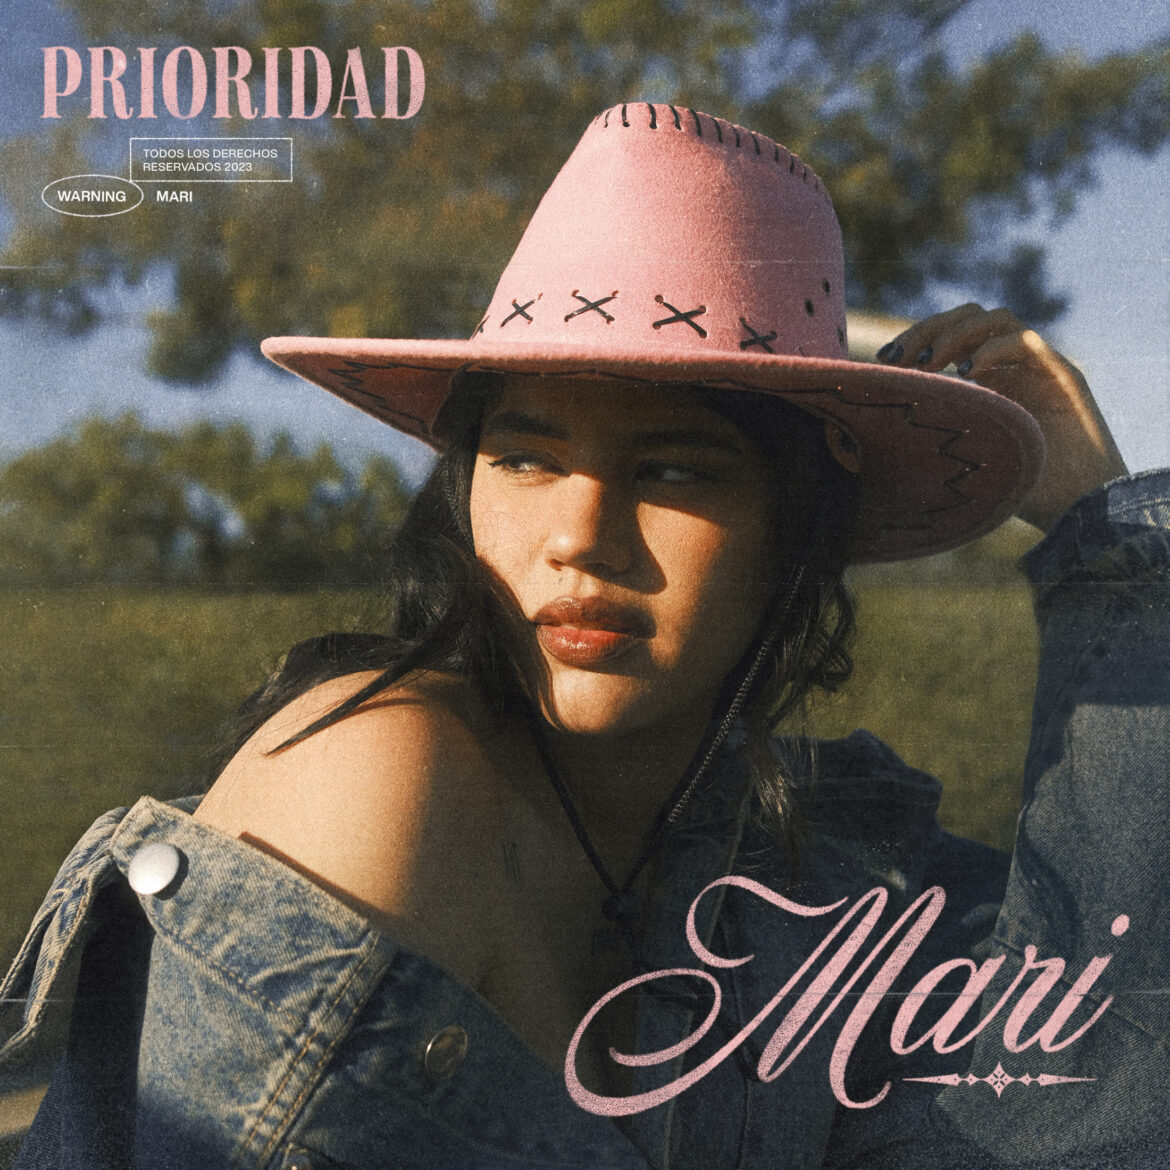 Mari “La Carajita” presenta su nuevo sencillo “Prioridad”